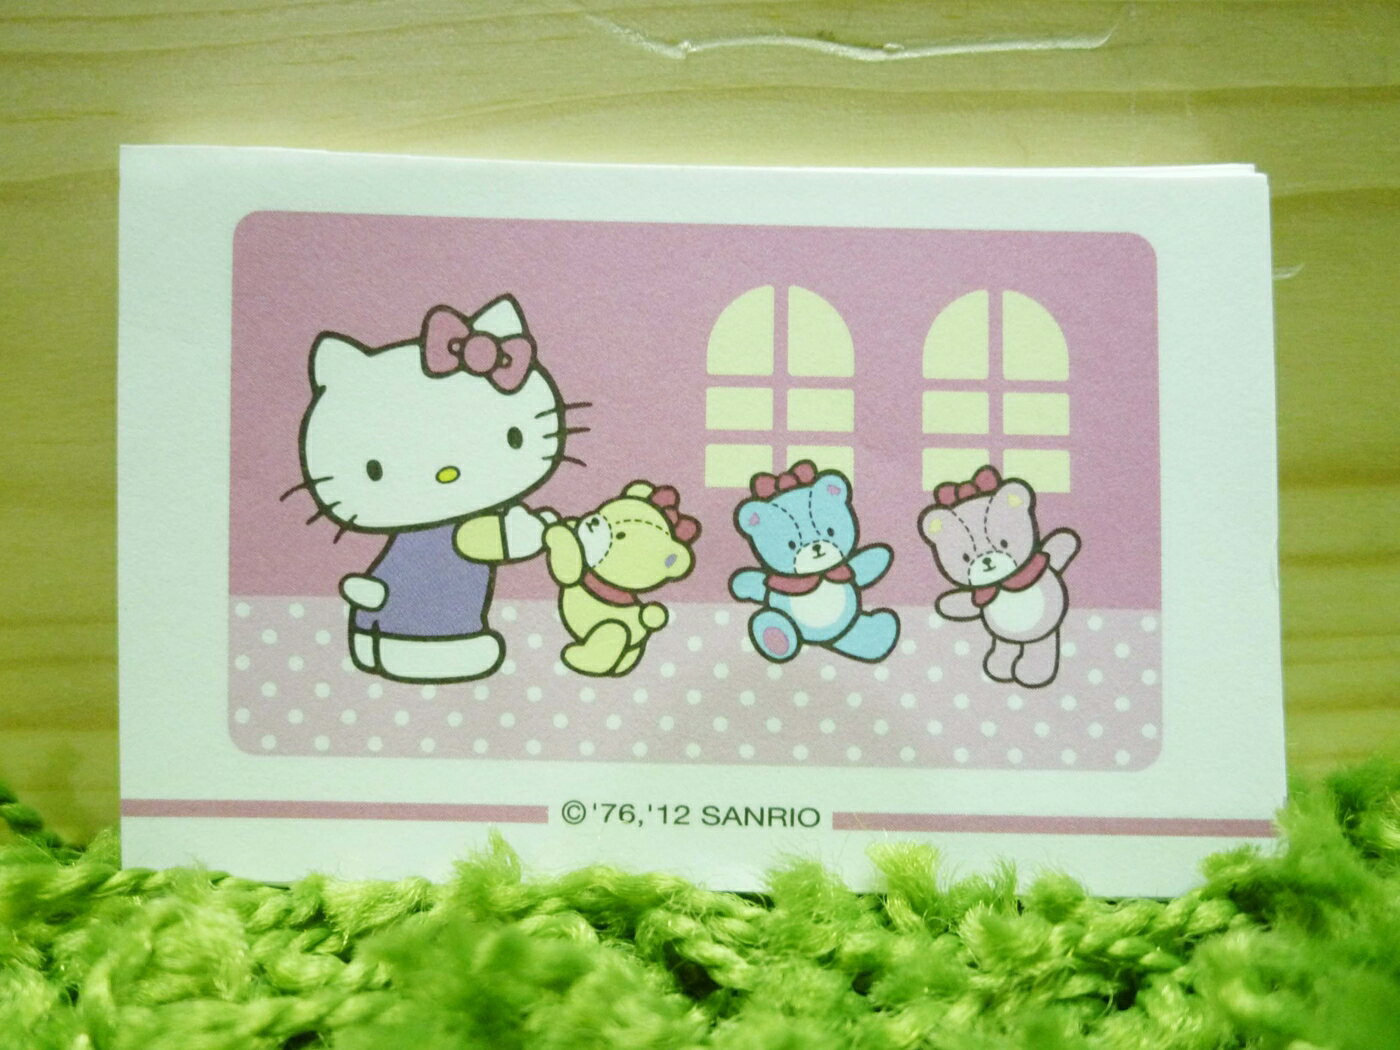 【震撼精品百貨】Hello Kitty 凱蒂貓 便條 熊【共1款】 震撼日式精品百貨